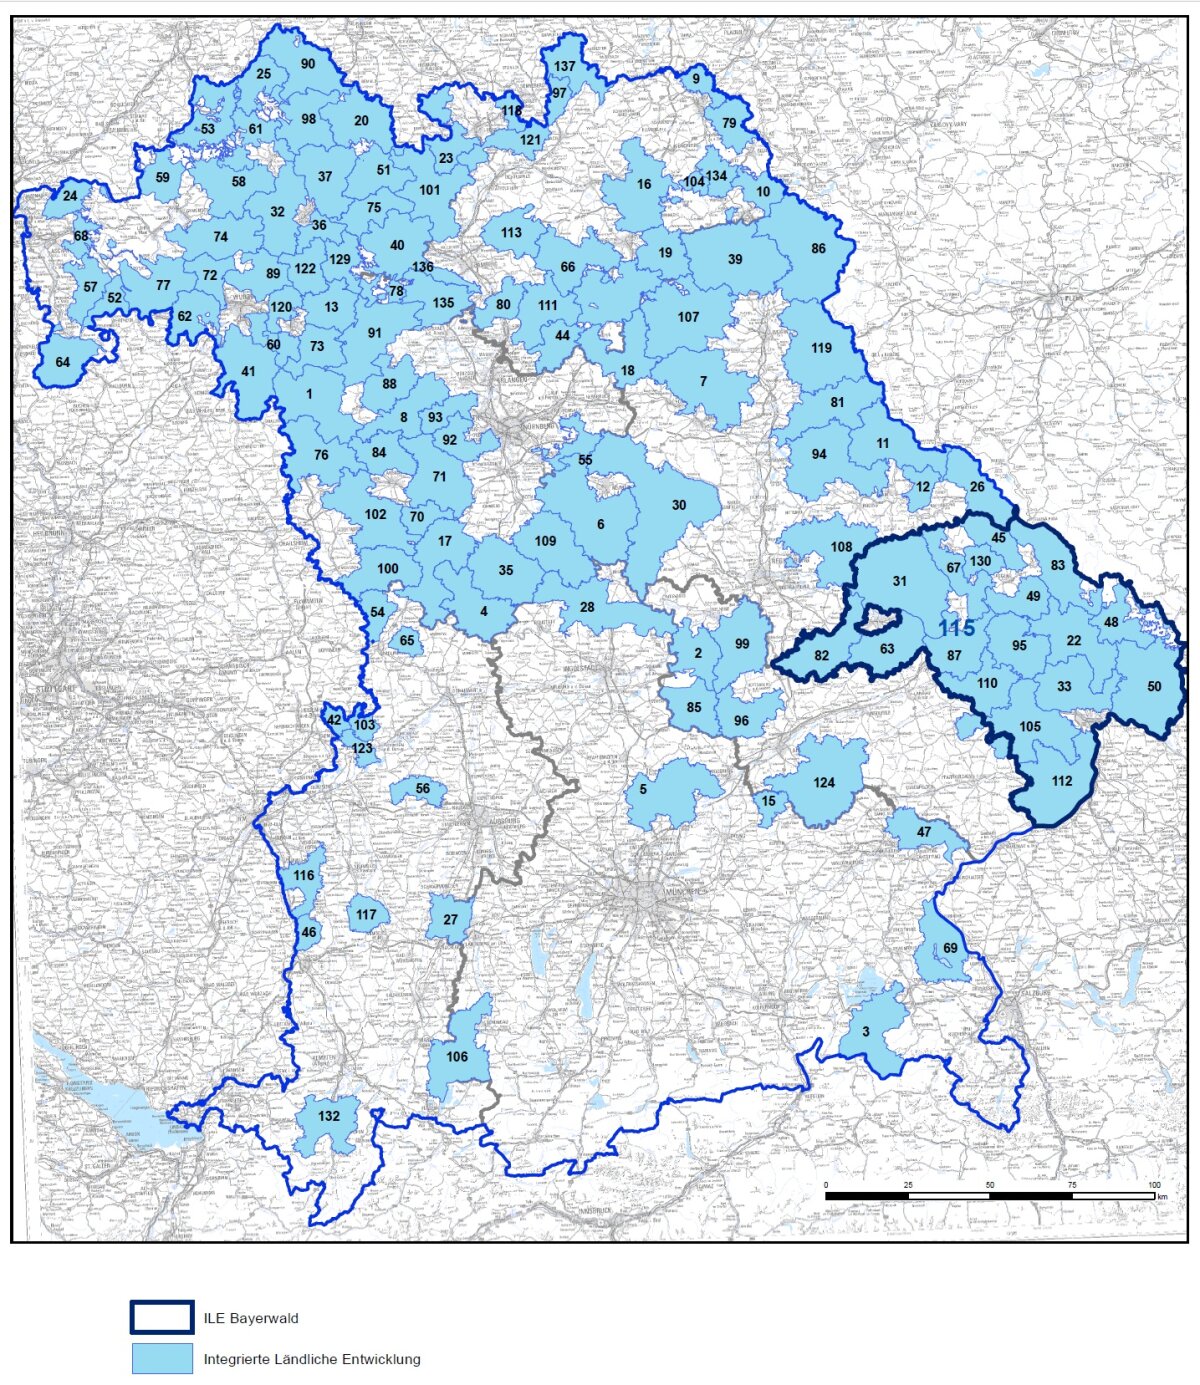 Landkarte von Bayern, in der alle ILE-Gebiete blau gekennzeichnet sind.